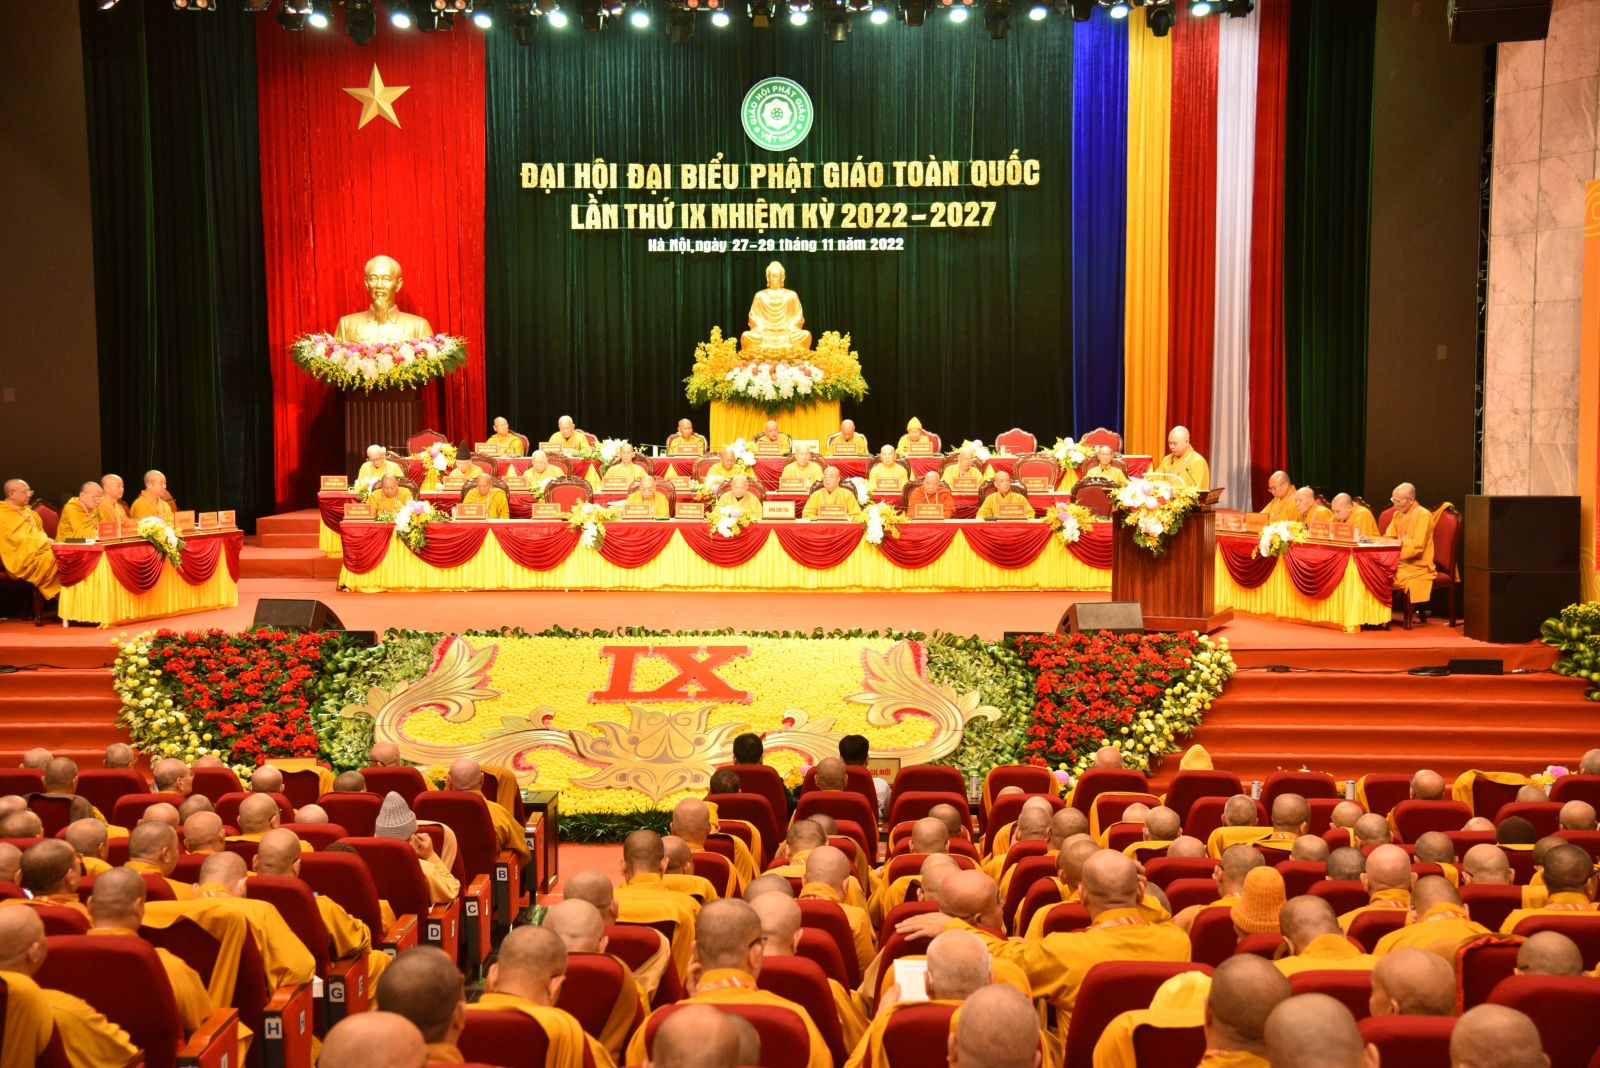 Phiên trù bị Đại hội Đại biểu Phật giáo toàn quốc lần thứ IX thành tựu viên mãn